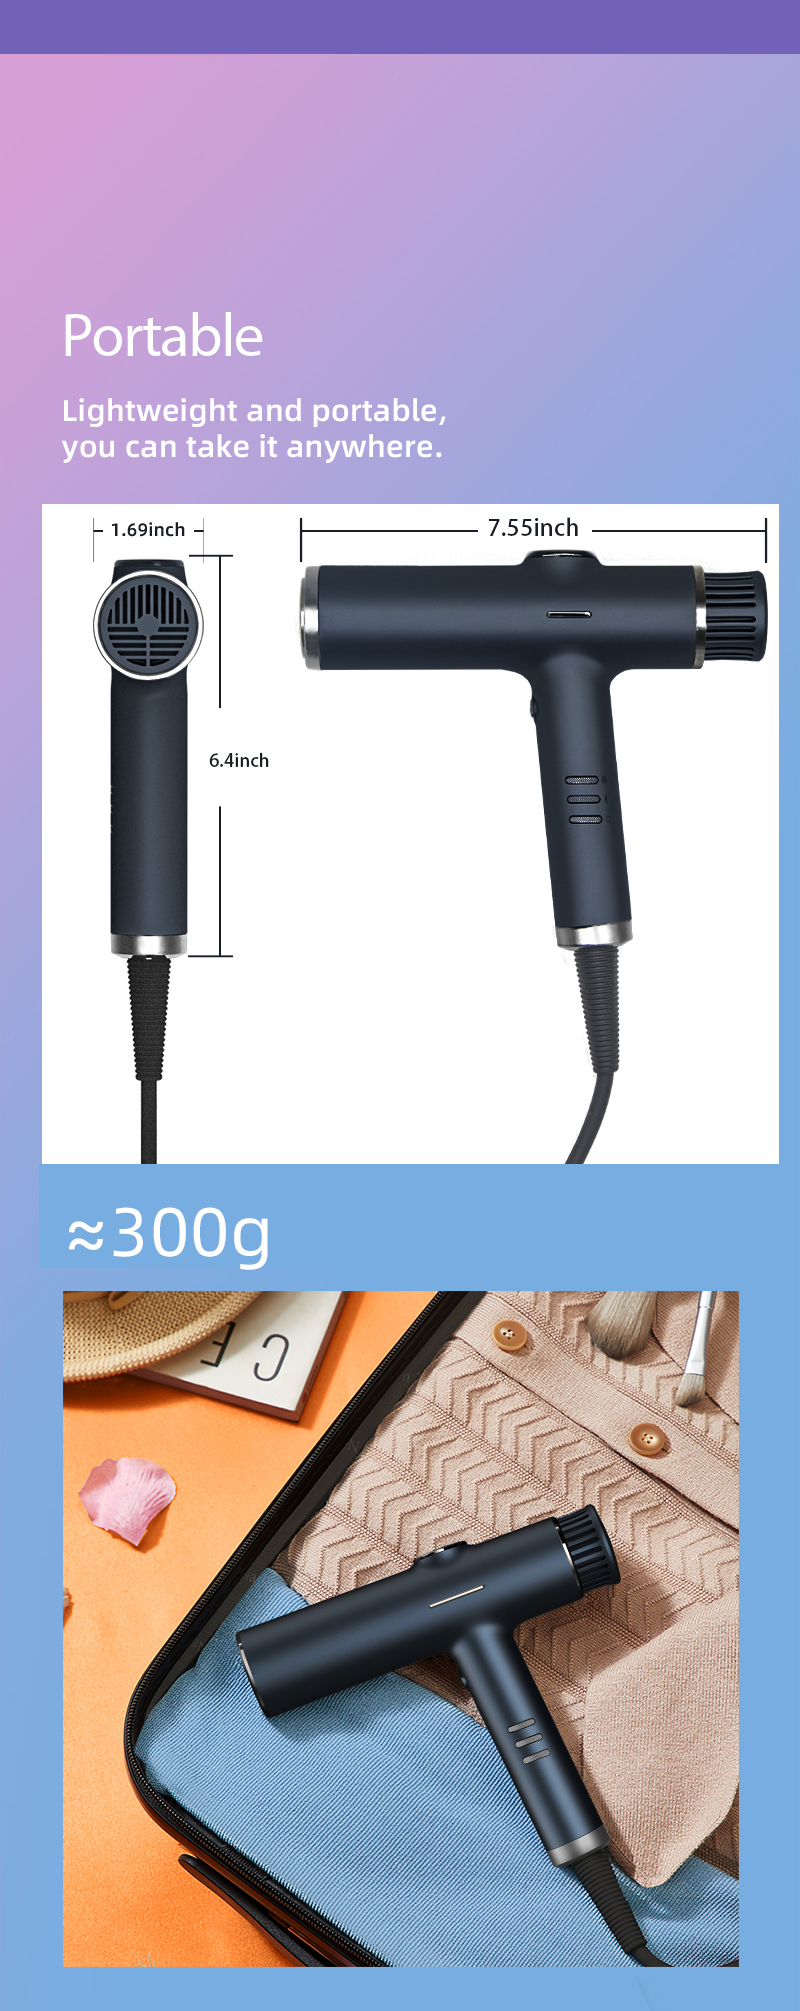 KR-F02 Brushless DC motor hair dryer 110,000 RPM hair blower 1200W ...